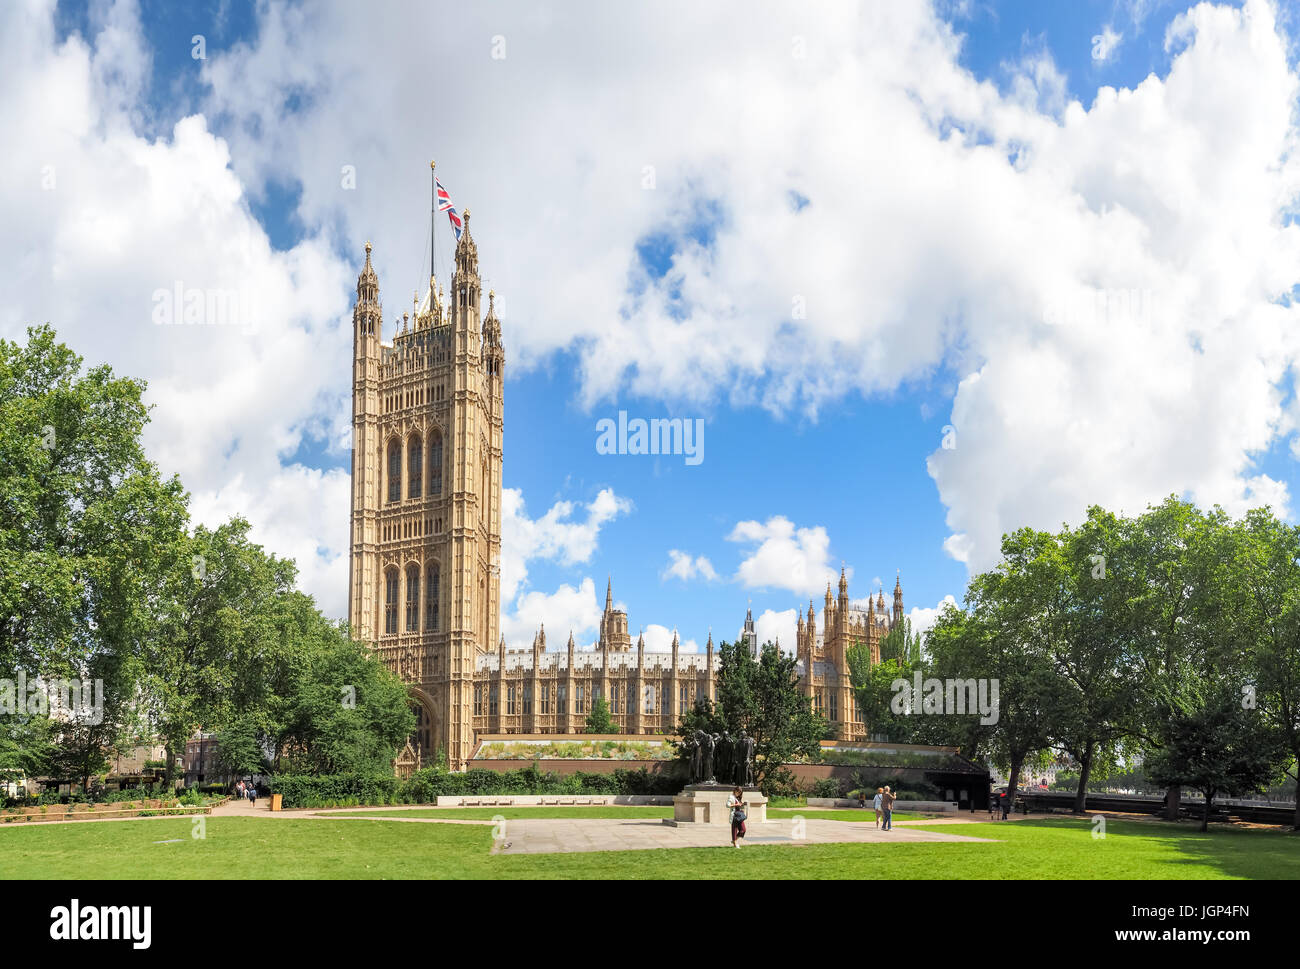 Palazzo di Westminster, vista dalla torre di Victoria Gardens, Londra, estate 2016 Foto Stock